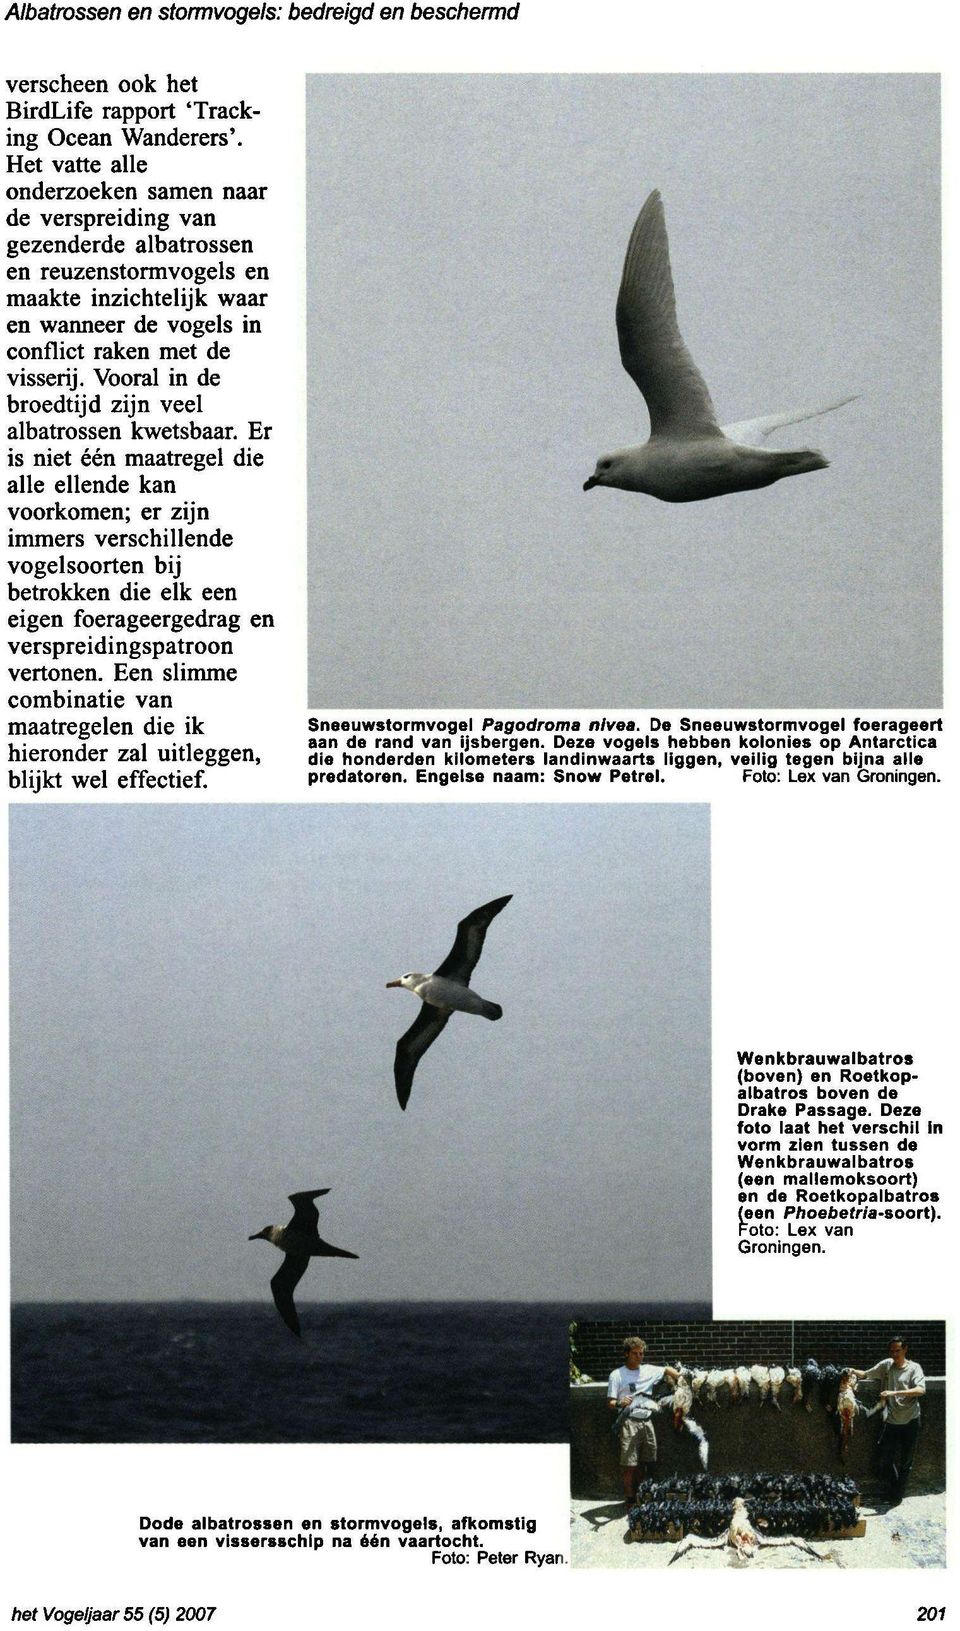 Vooral in de broedtijd zijn veel albatrossen kwetsbaar.